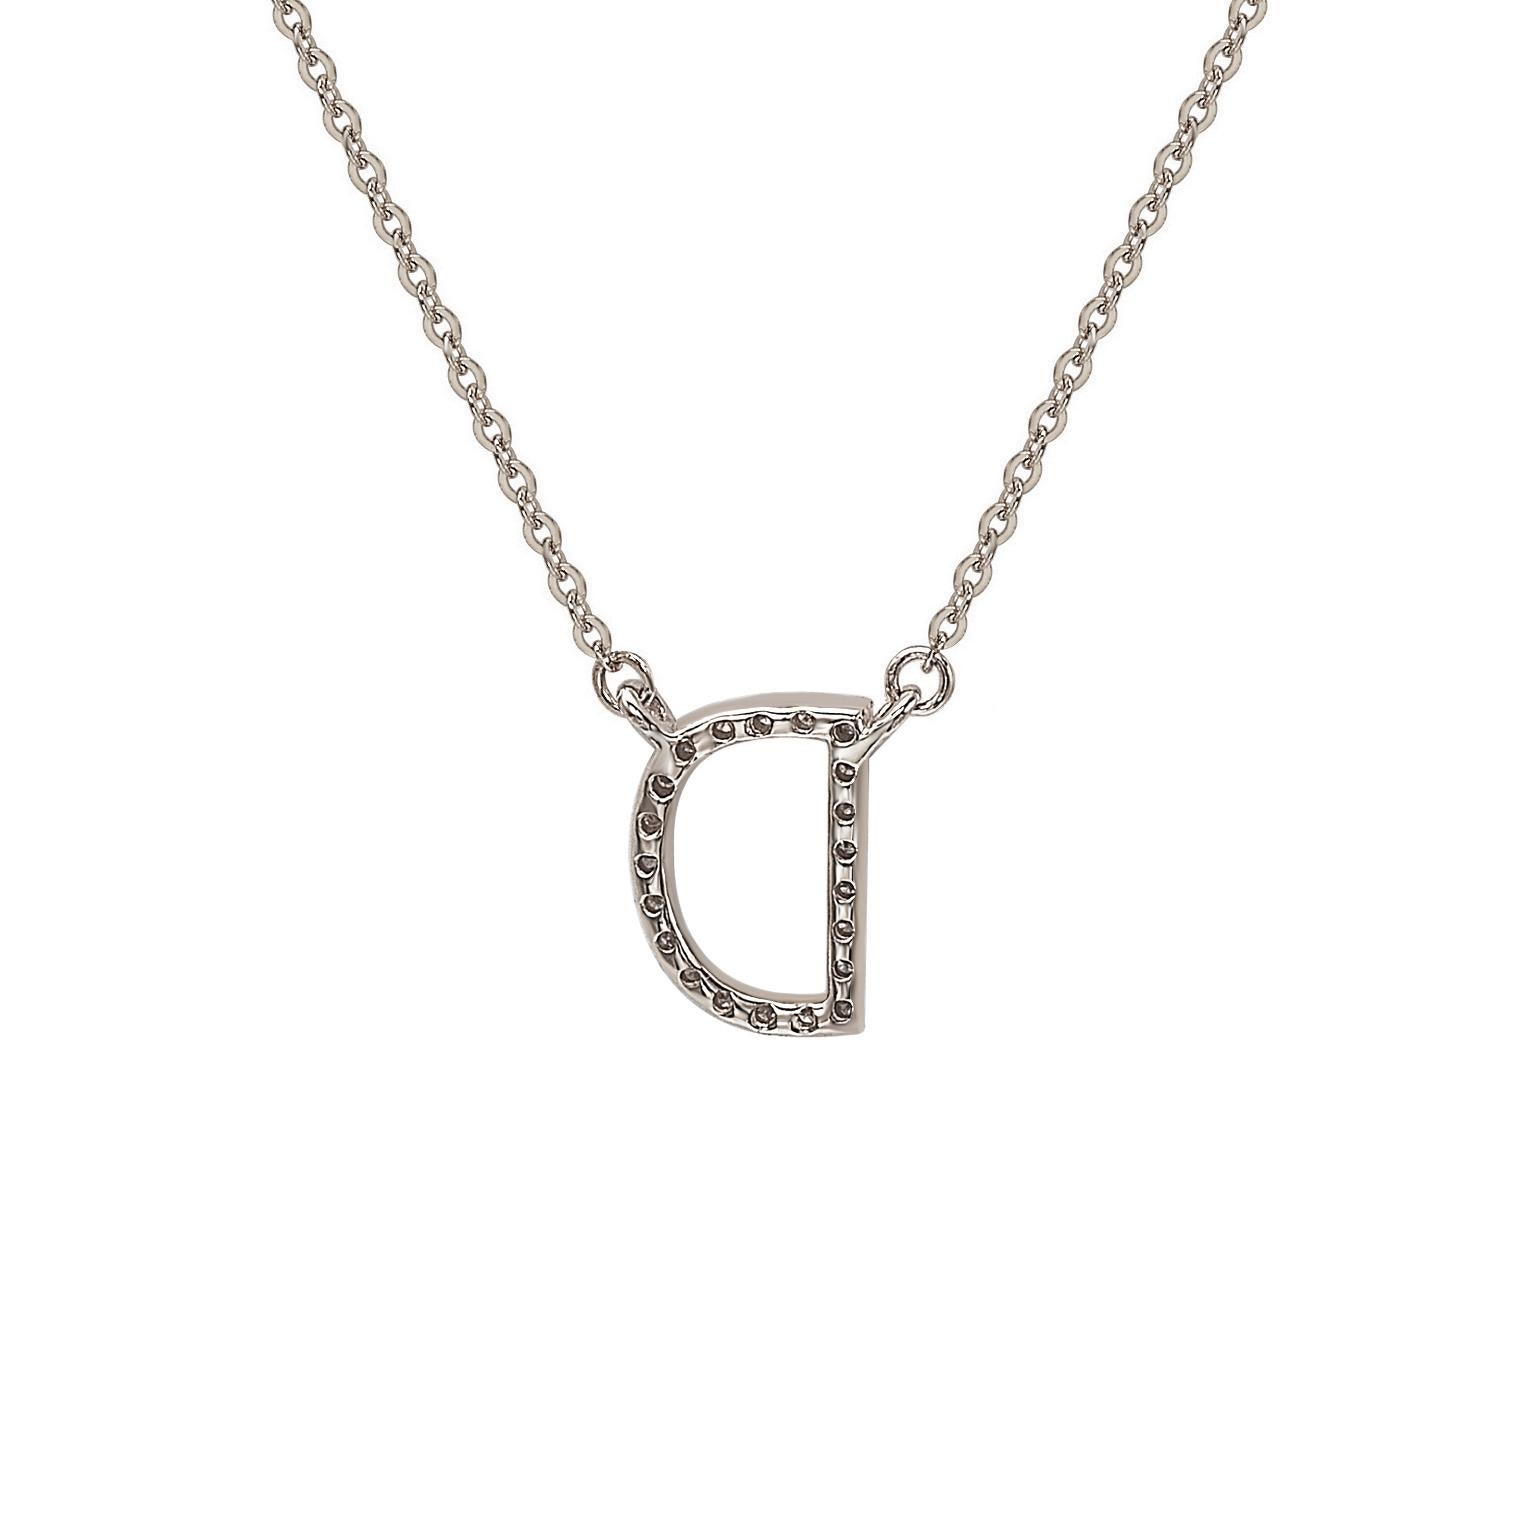 Cet époustouflant collier lettre personnalisé Suzy Levian est composé de diamants naturels, sertis à la main dans de l'or blanc 14 carats. C'est le cadeau individualisé idéal pour faire savoir à une personne spéciale que vous pensez à elle. Chaque